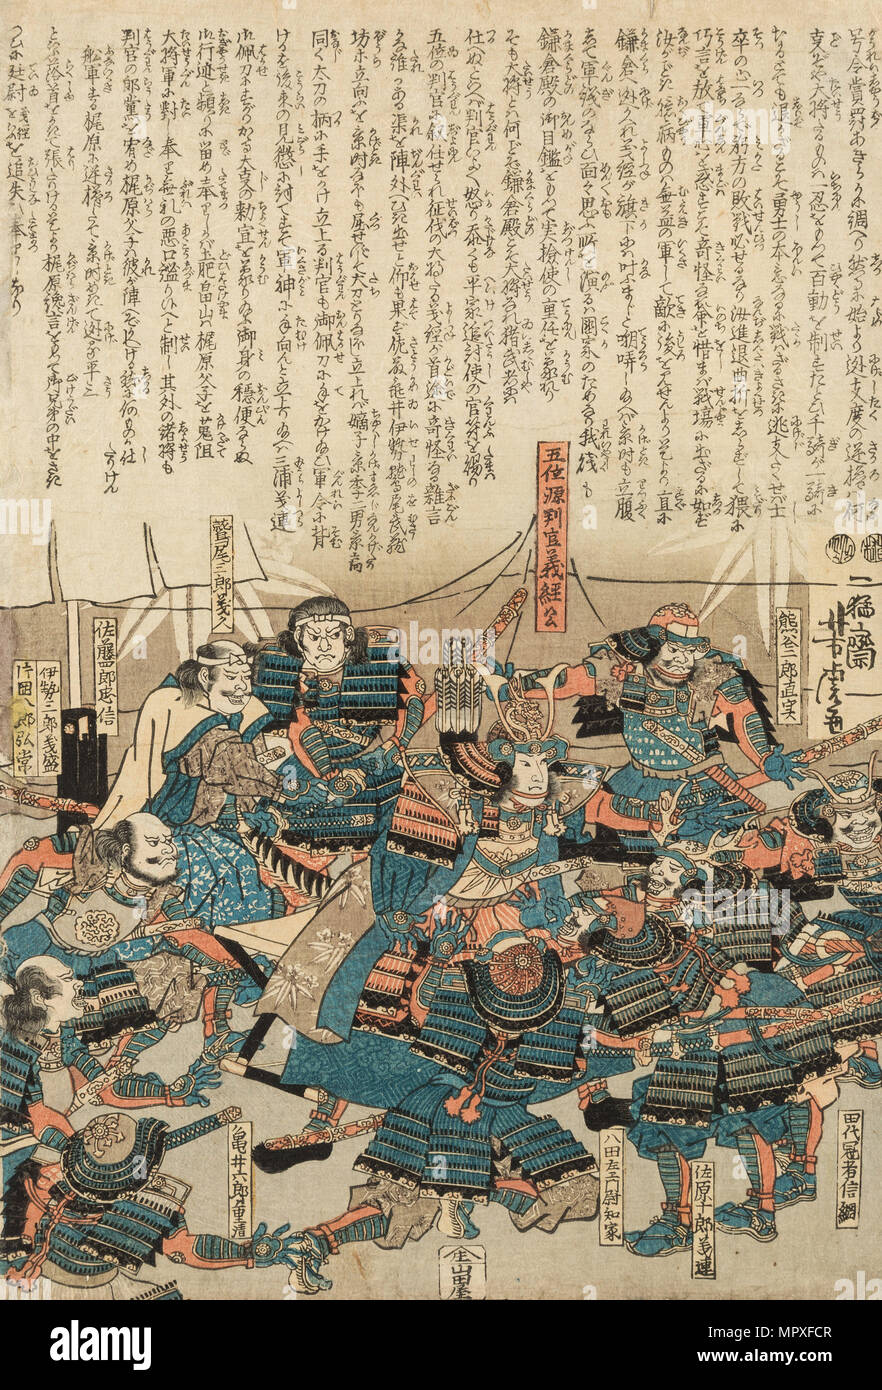 Shogun Minamoto no Yoshitsune and his Samurai, c. 1840. Stock Photo